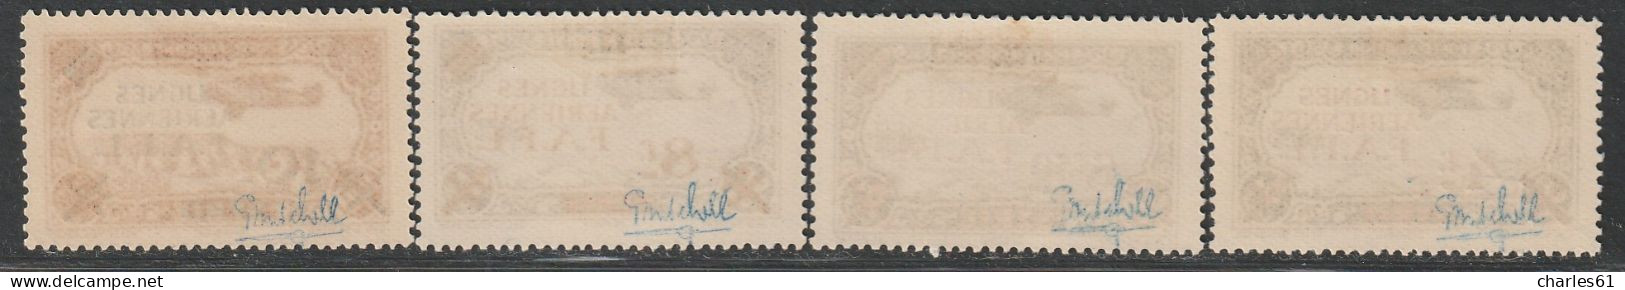 LEVANT - Poste Aérienne N°1/4 * (1942) - Neufs